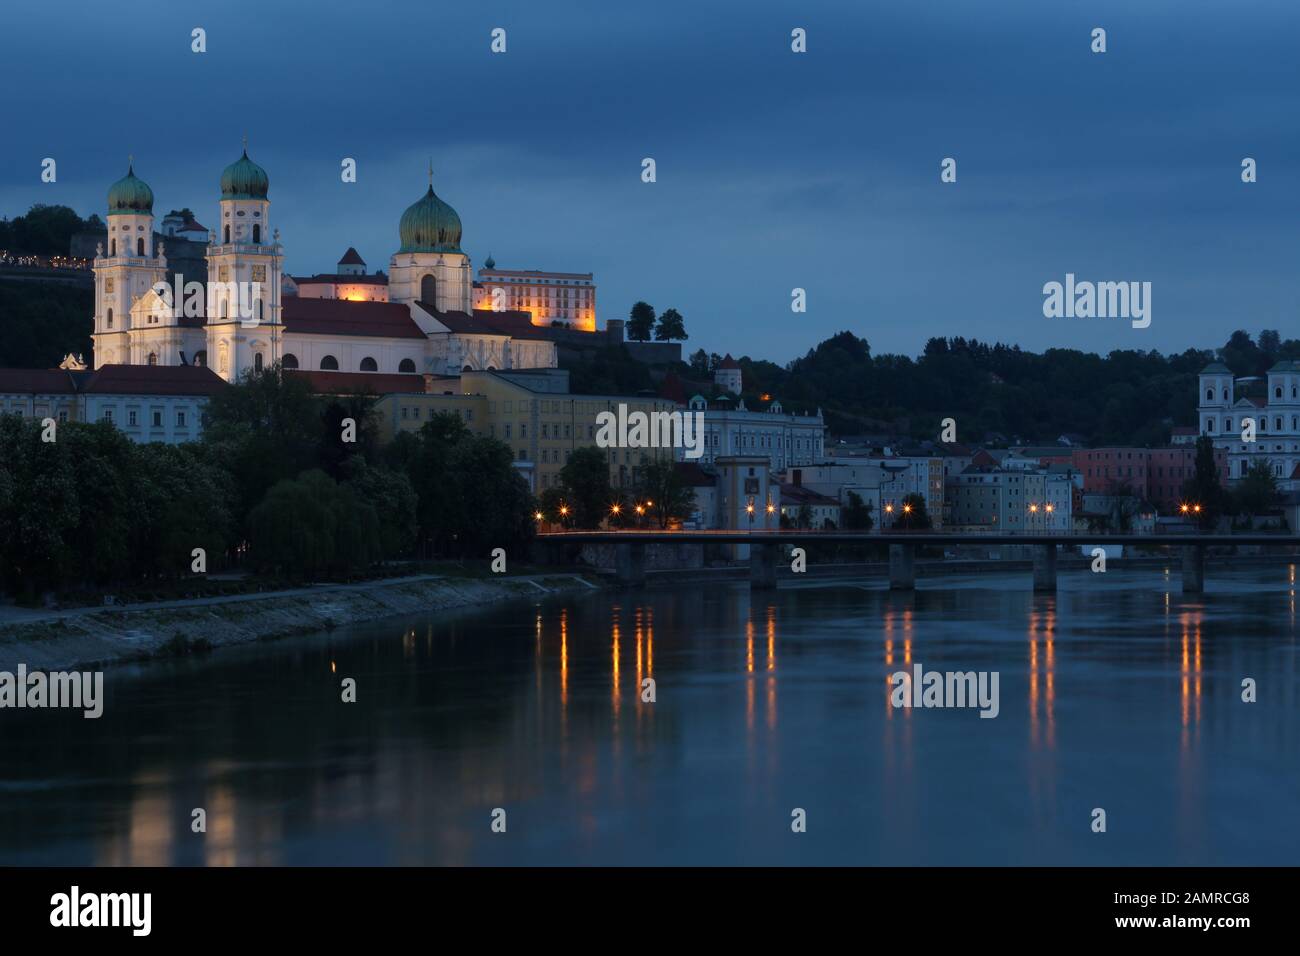 Sicht auf die Passauer Altstadt im Abendgrauen Foto Stock